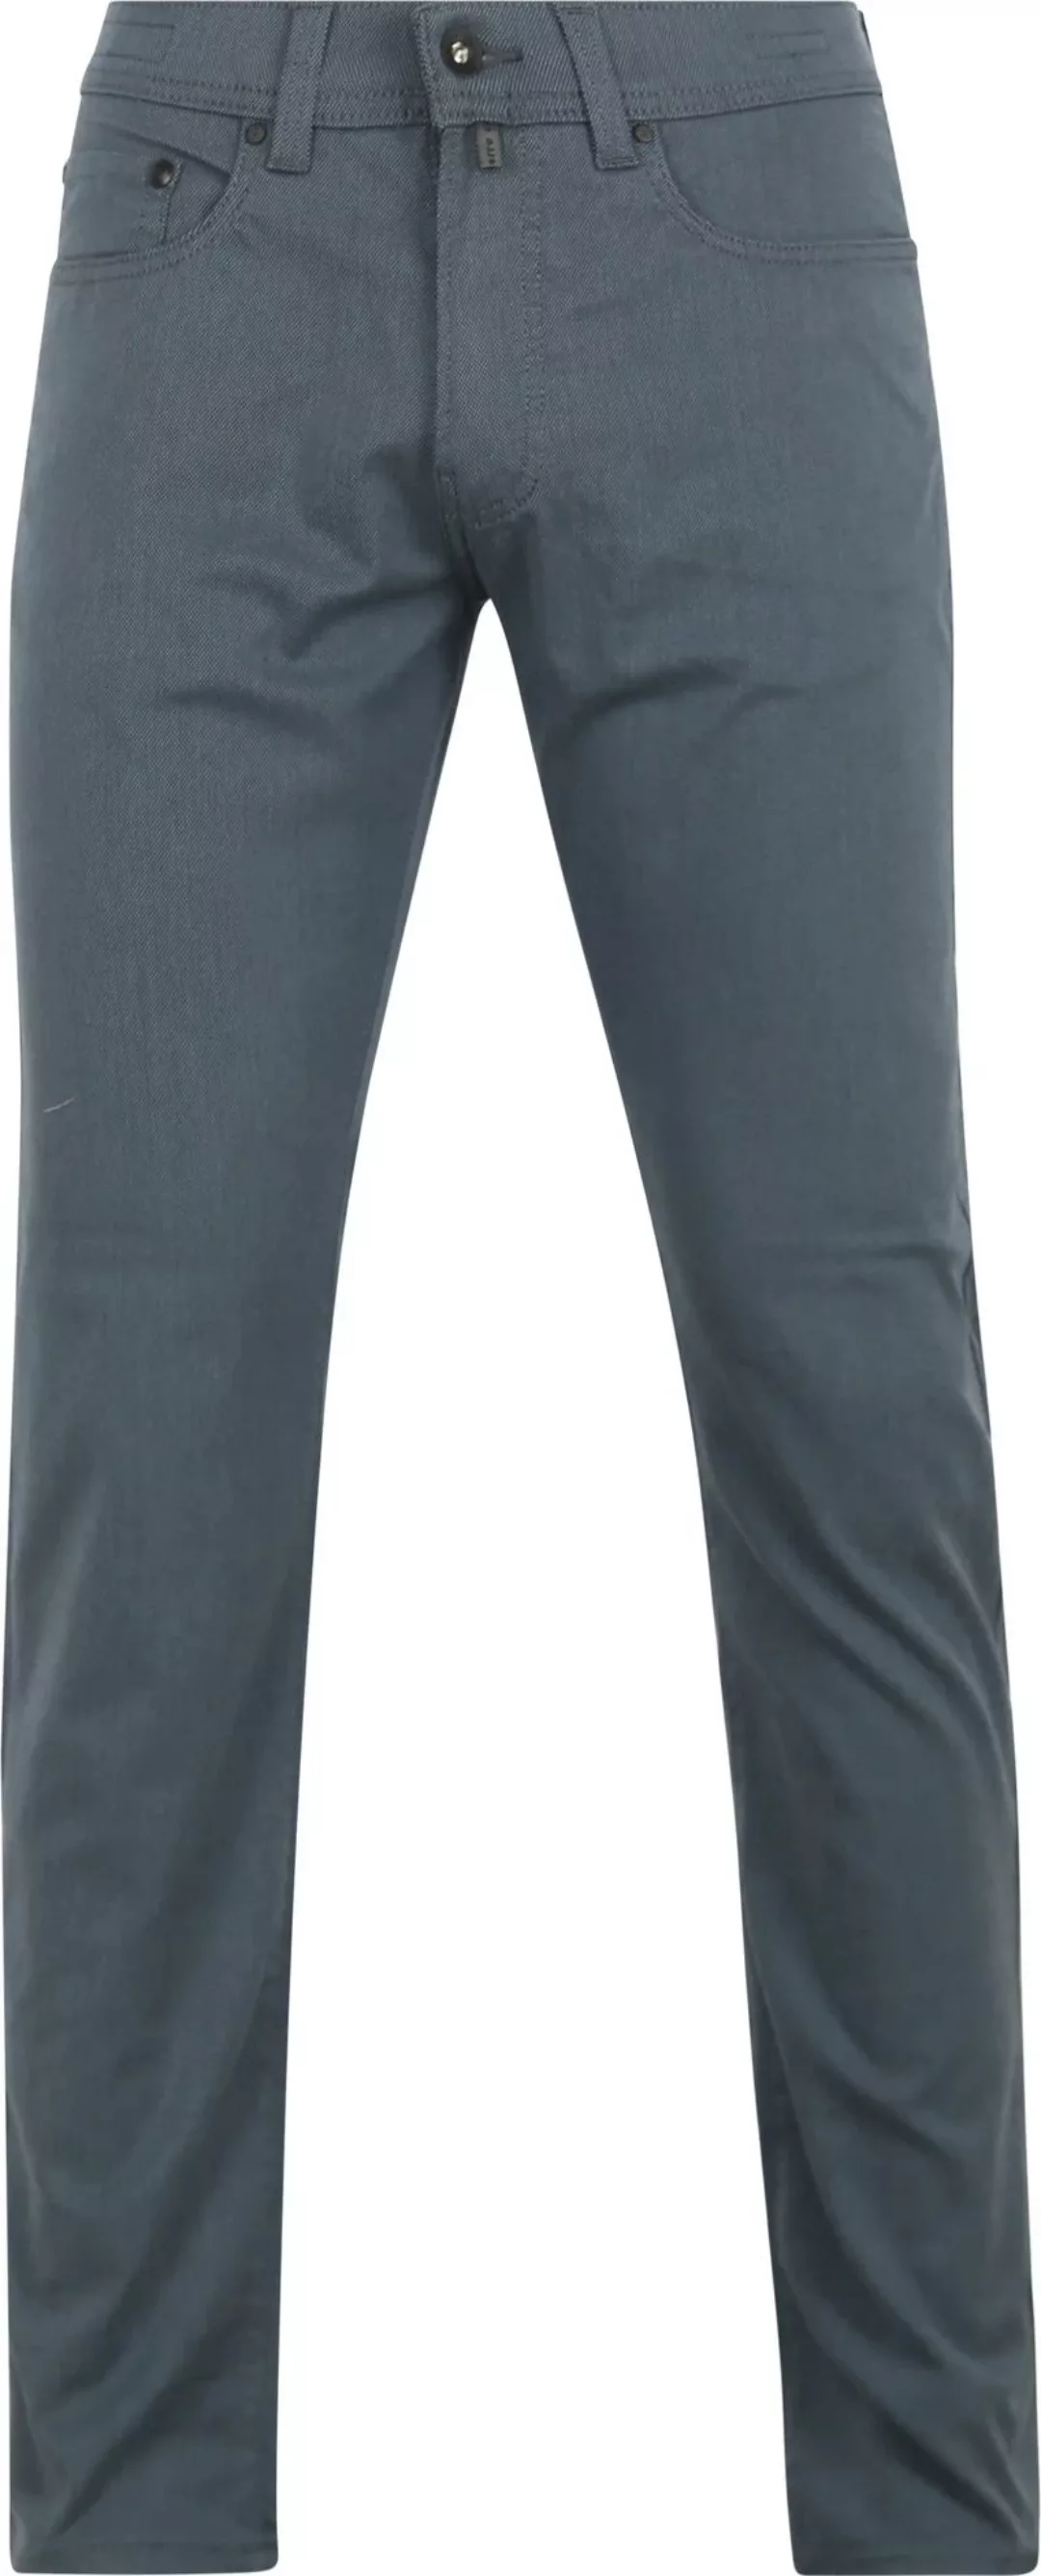 Pierre Cardin Trousers Lyon Tapered Ocean Blau - Größe W 32 - L 34 günstig online kaufen